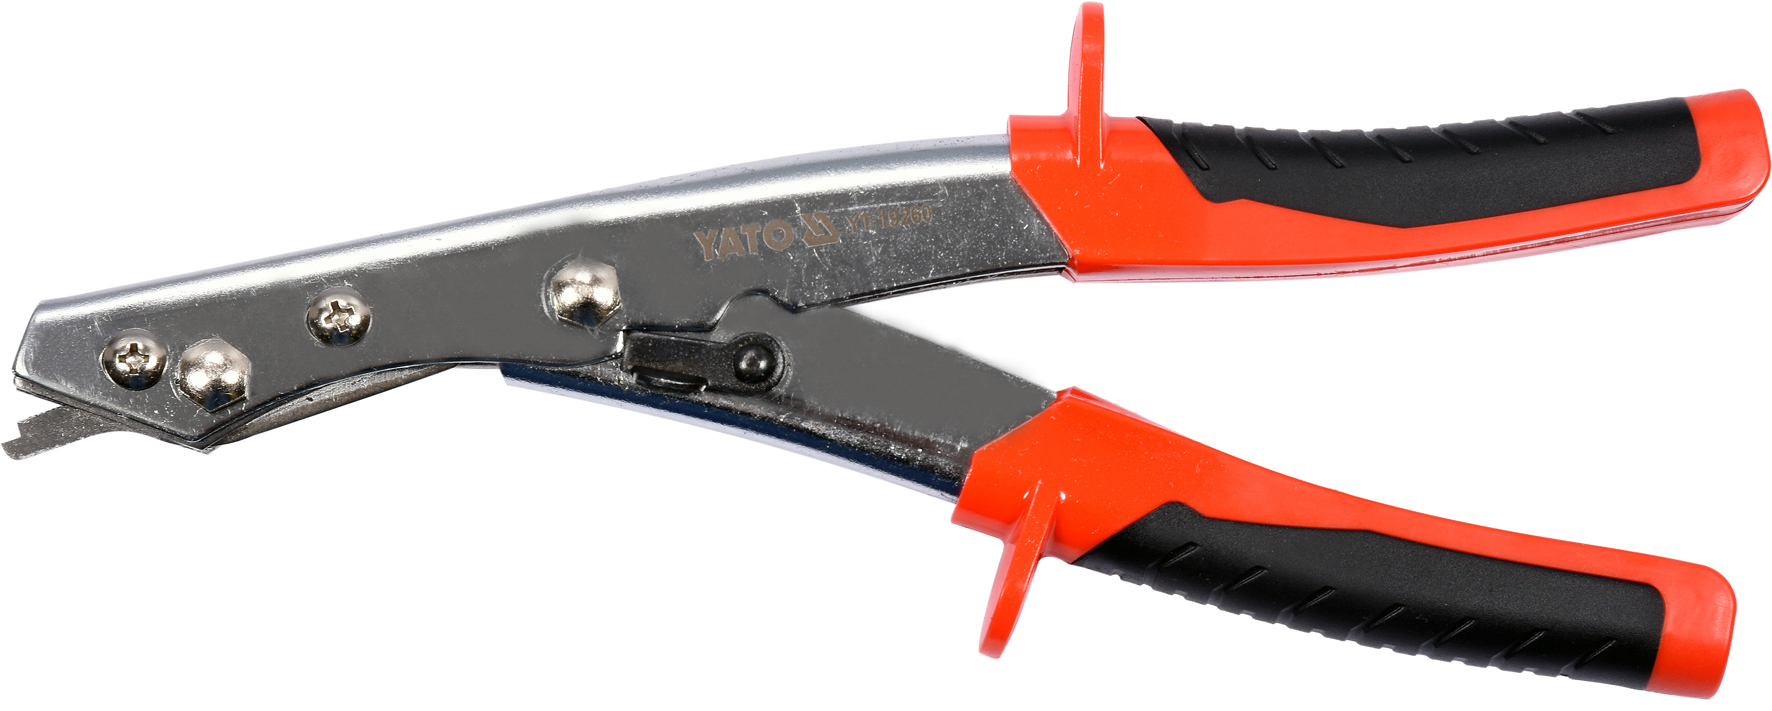 Шлицевые ножницы по металлу: устройство, виды, основные параметры